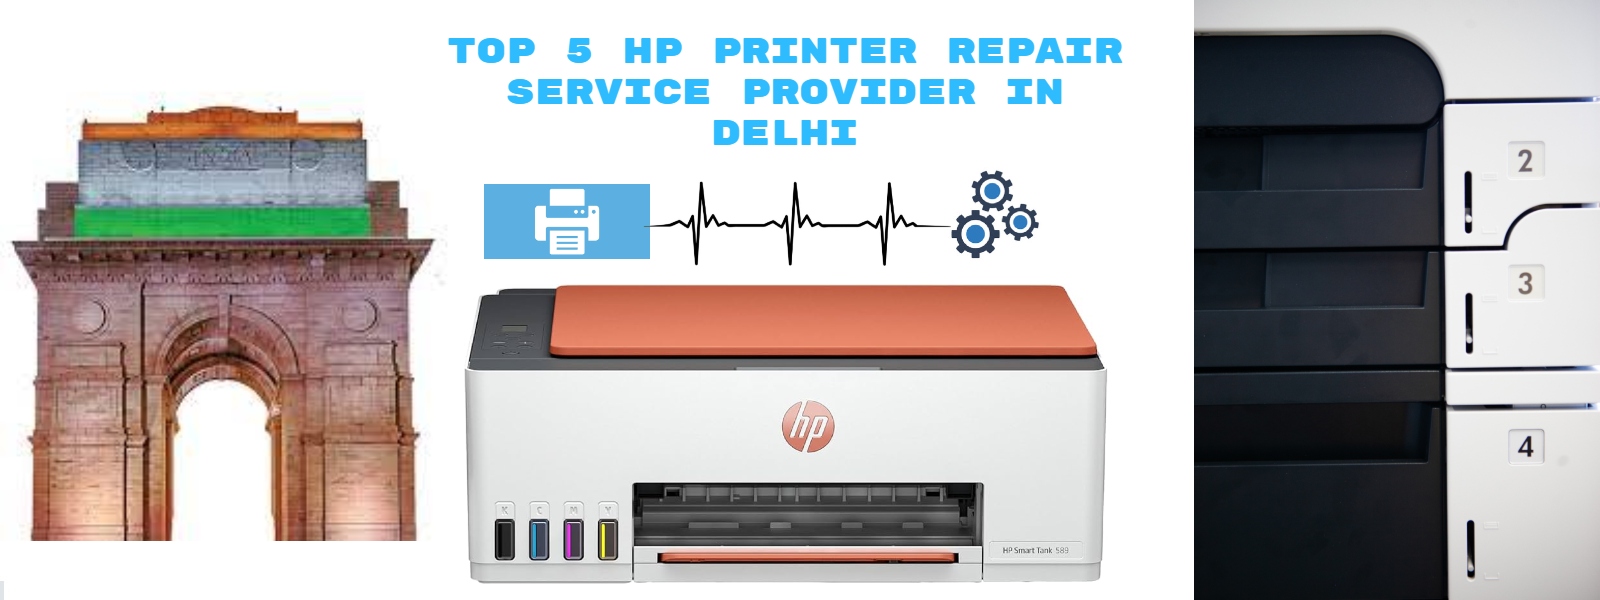 Top 5 HP Printer Repair Service Provider In Delhi